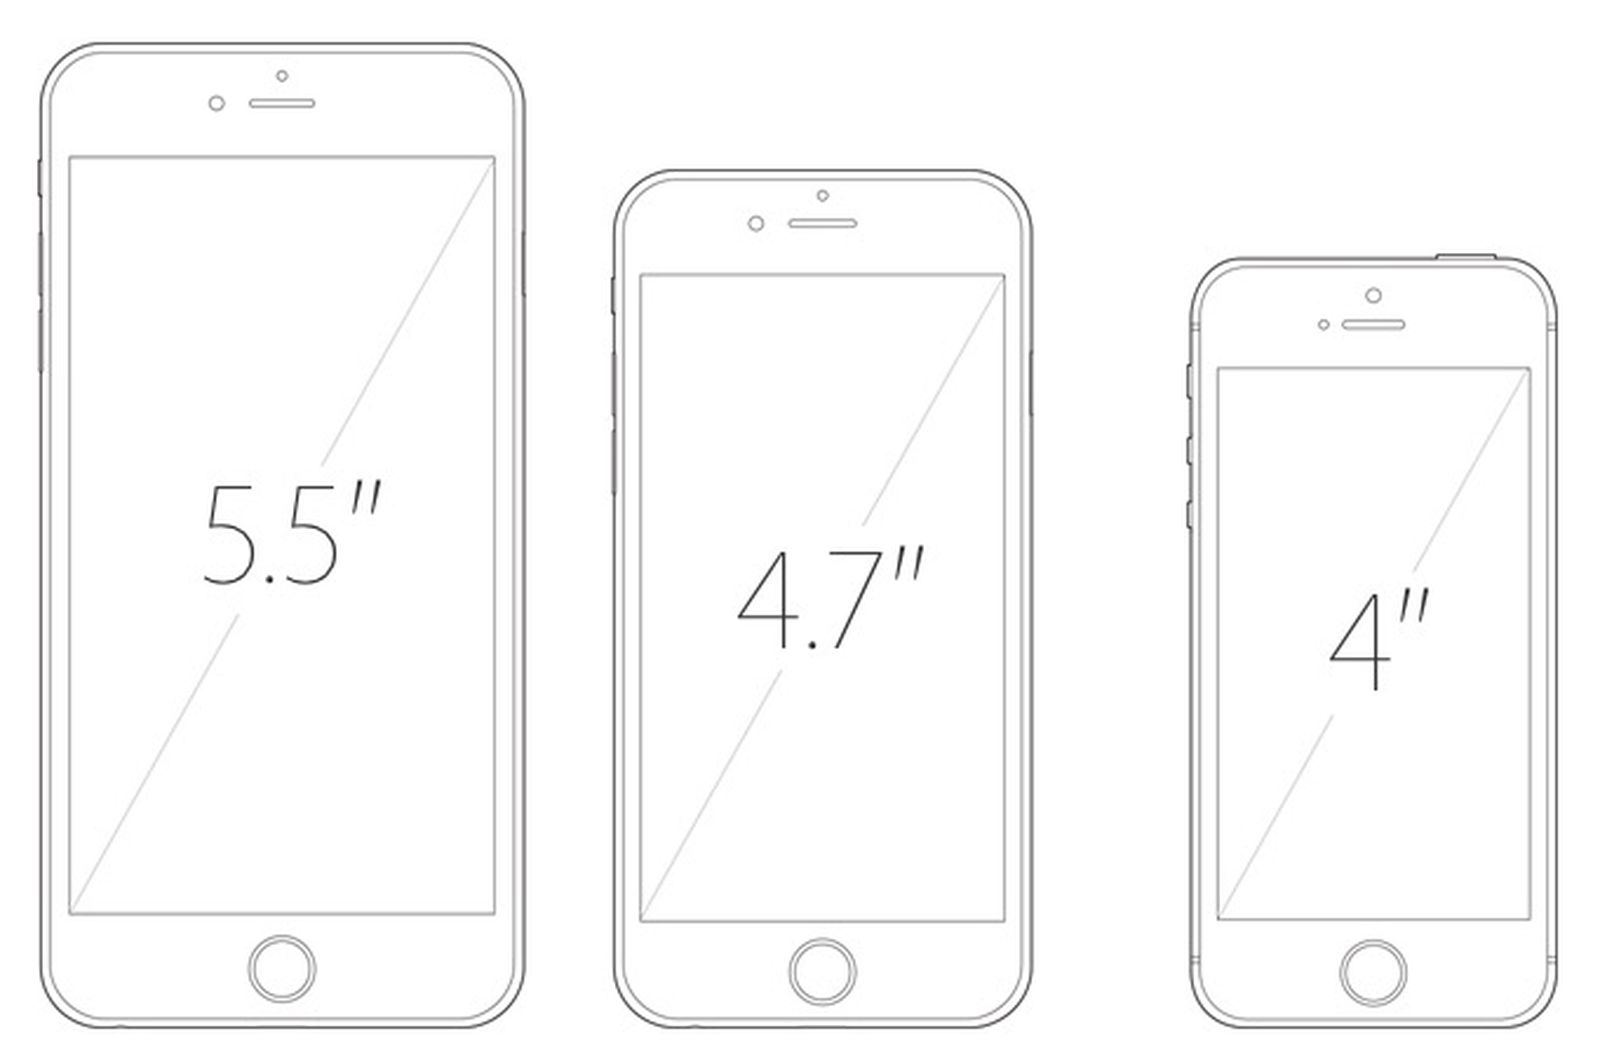 Айфон 5 se диагональ экрана